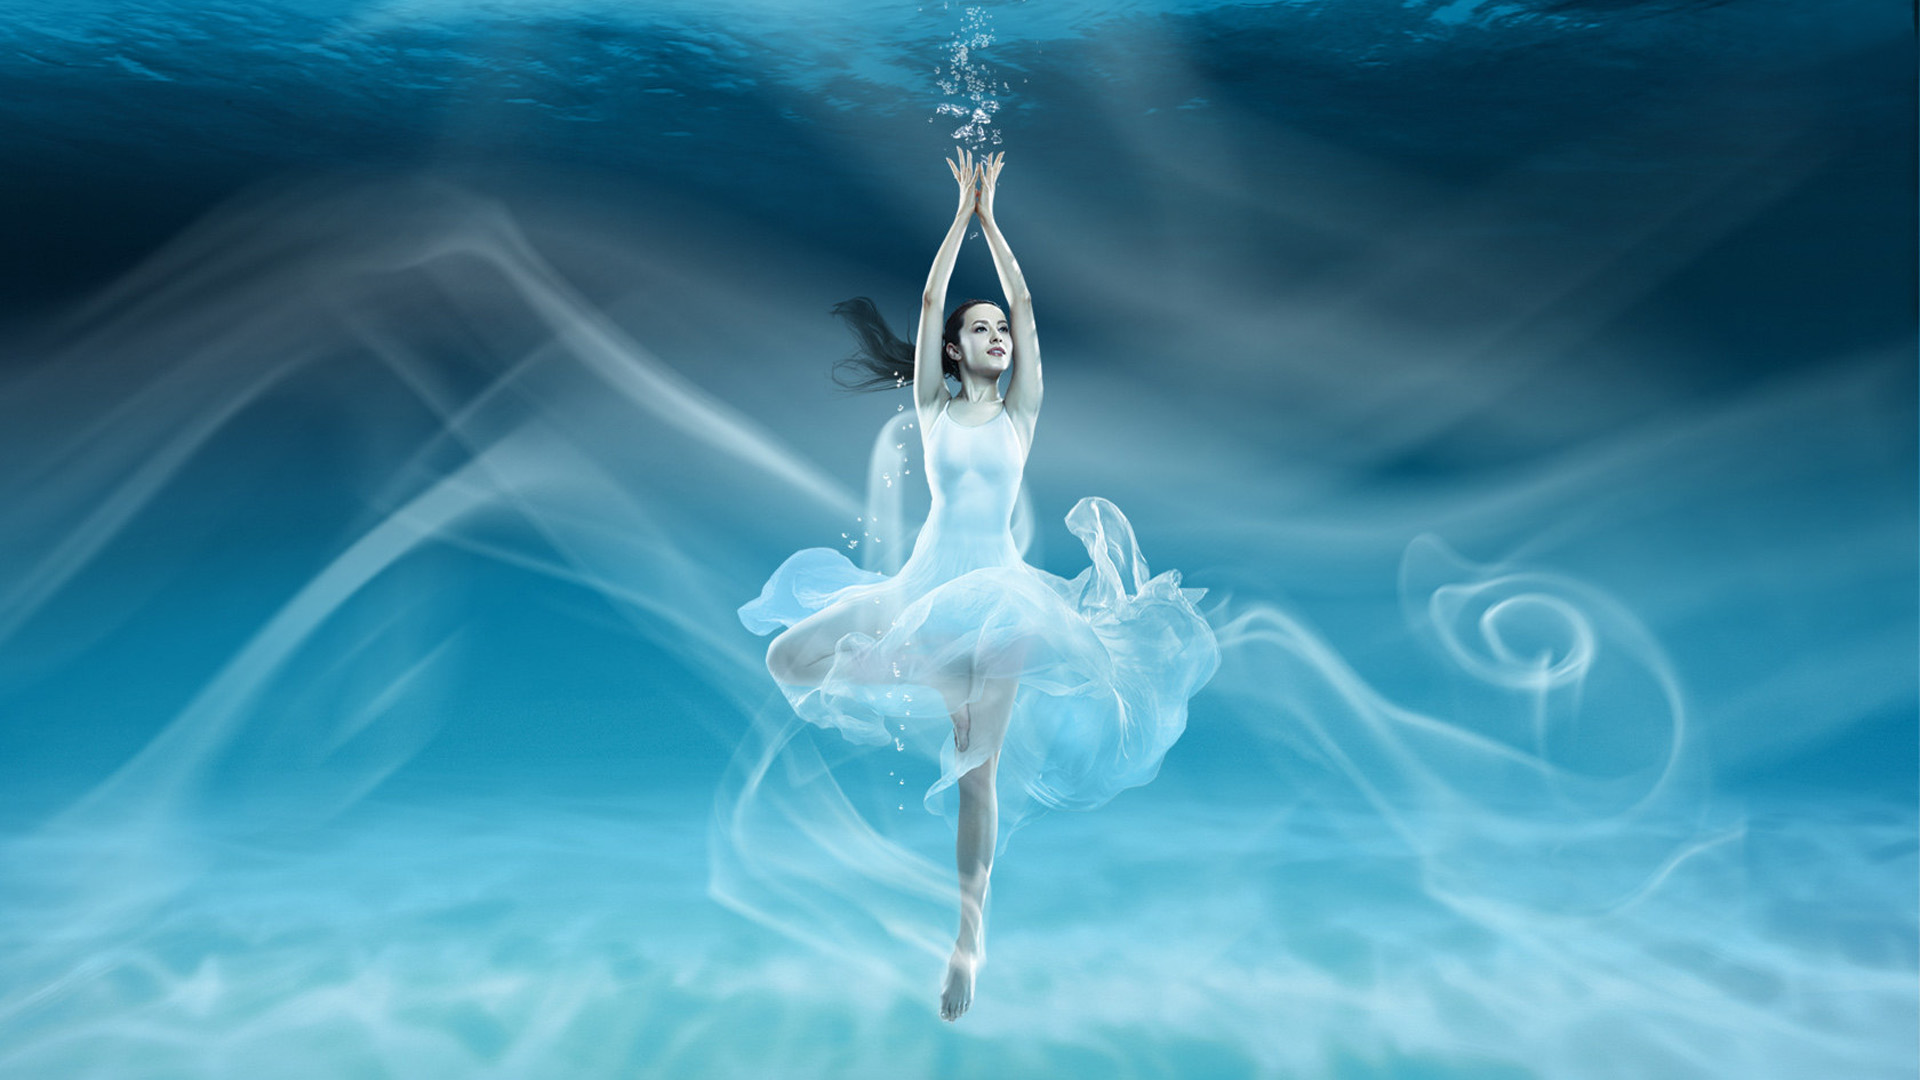 水中芭蕾 The water ballet 桌面壁纸